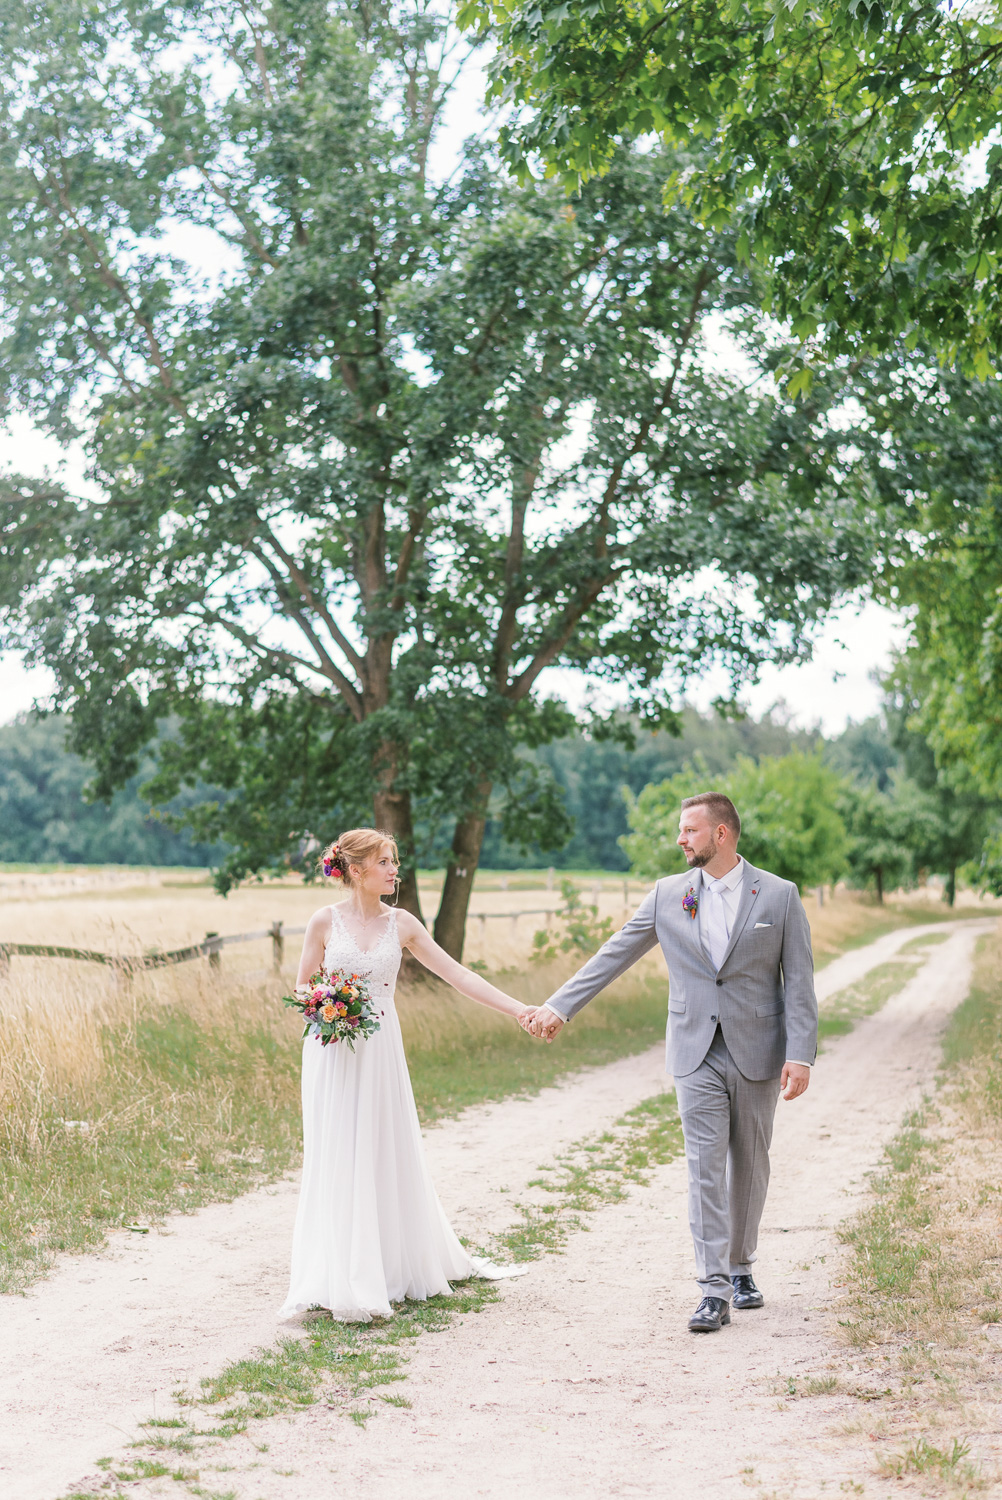 Fine Art Destination Wedding Photographer in Europe | Nicole Mihelic Wedding Photographer in France | Provence Wedding Photographer | Hochzeitsfotograf Celle | Hochzeitsfotograf Hamburg